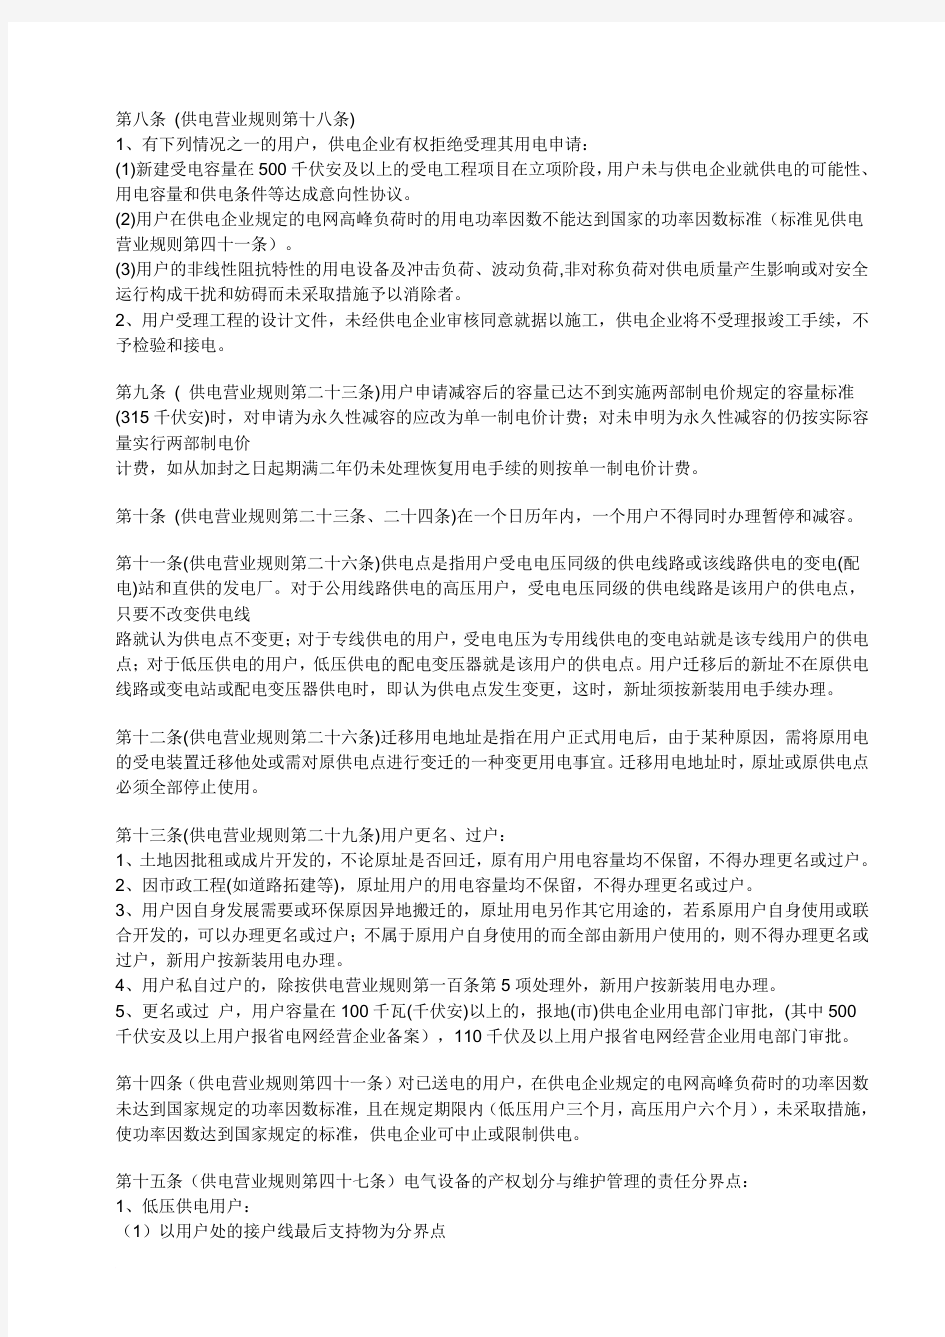 供电营业规则江苏省补充规定